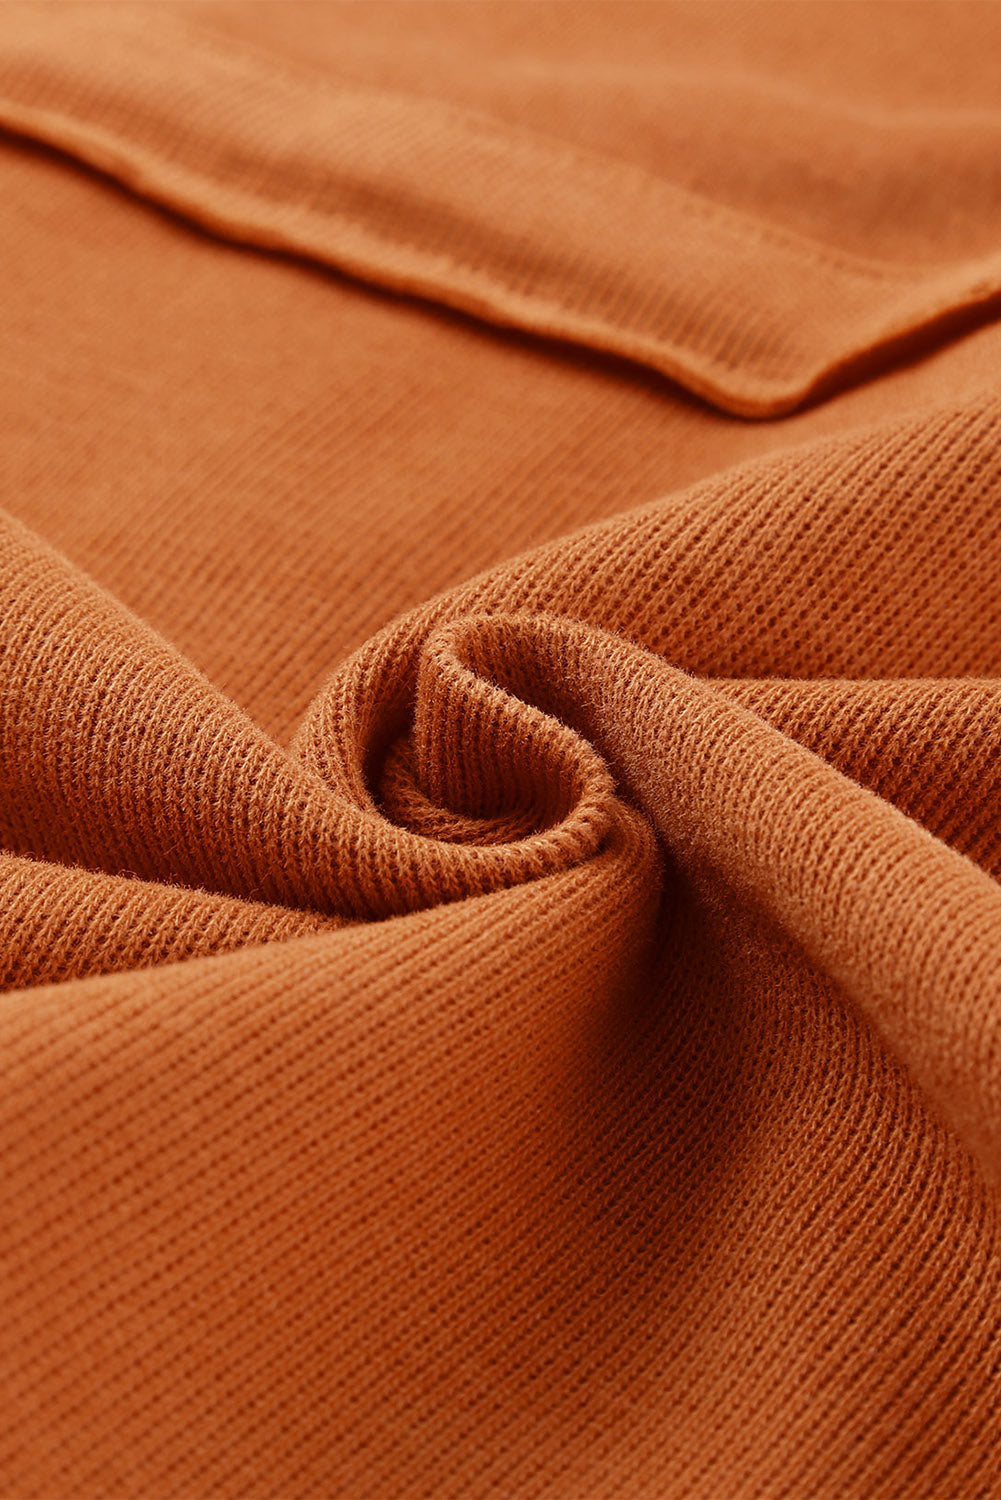 Orangefarbener, lässiger Kapuzenpullover mit einfarbigem Patchwork-Besatz und Knöpfen